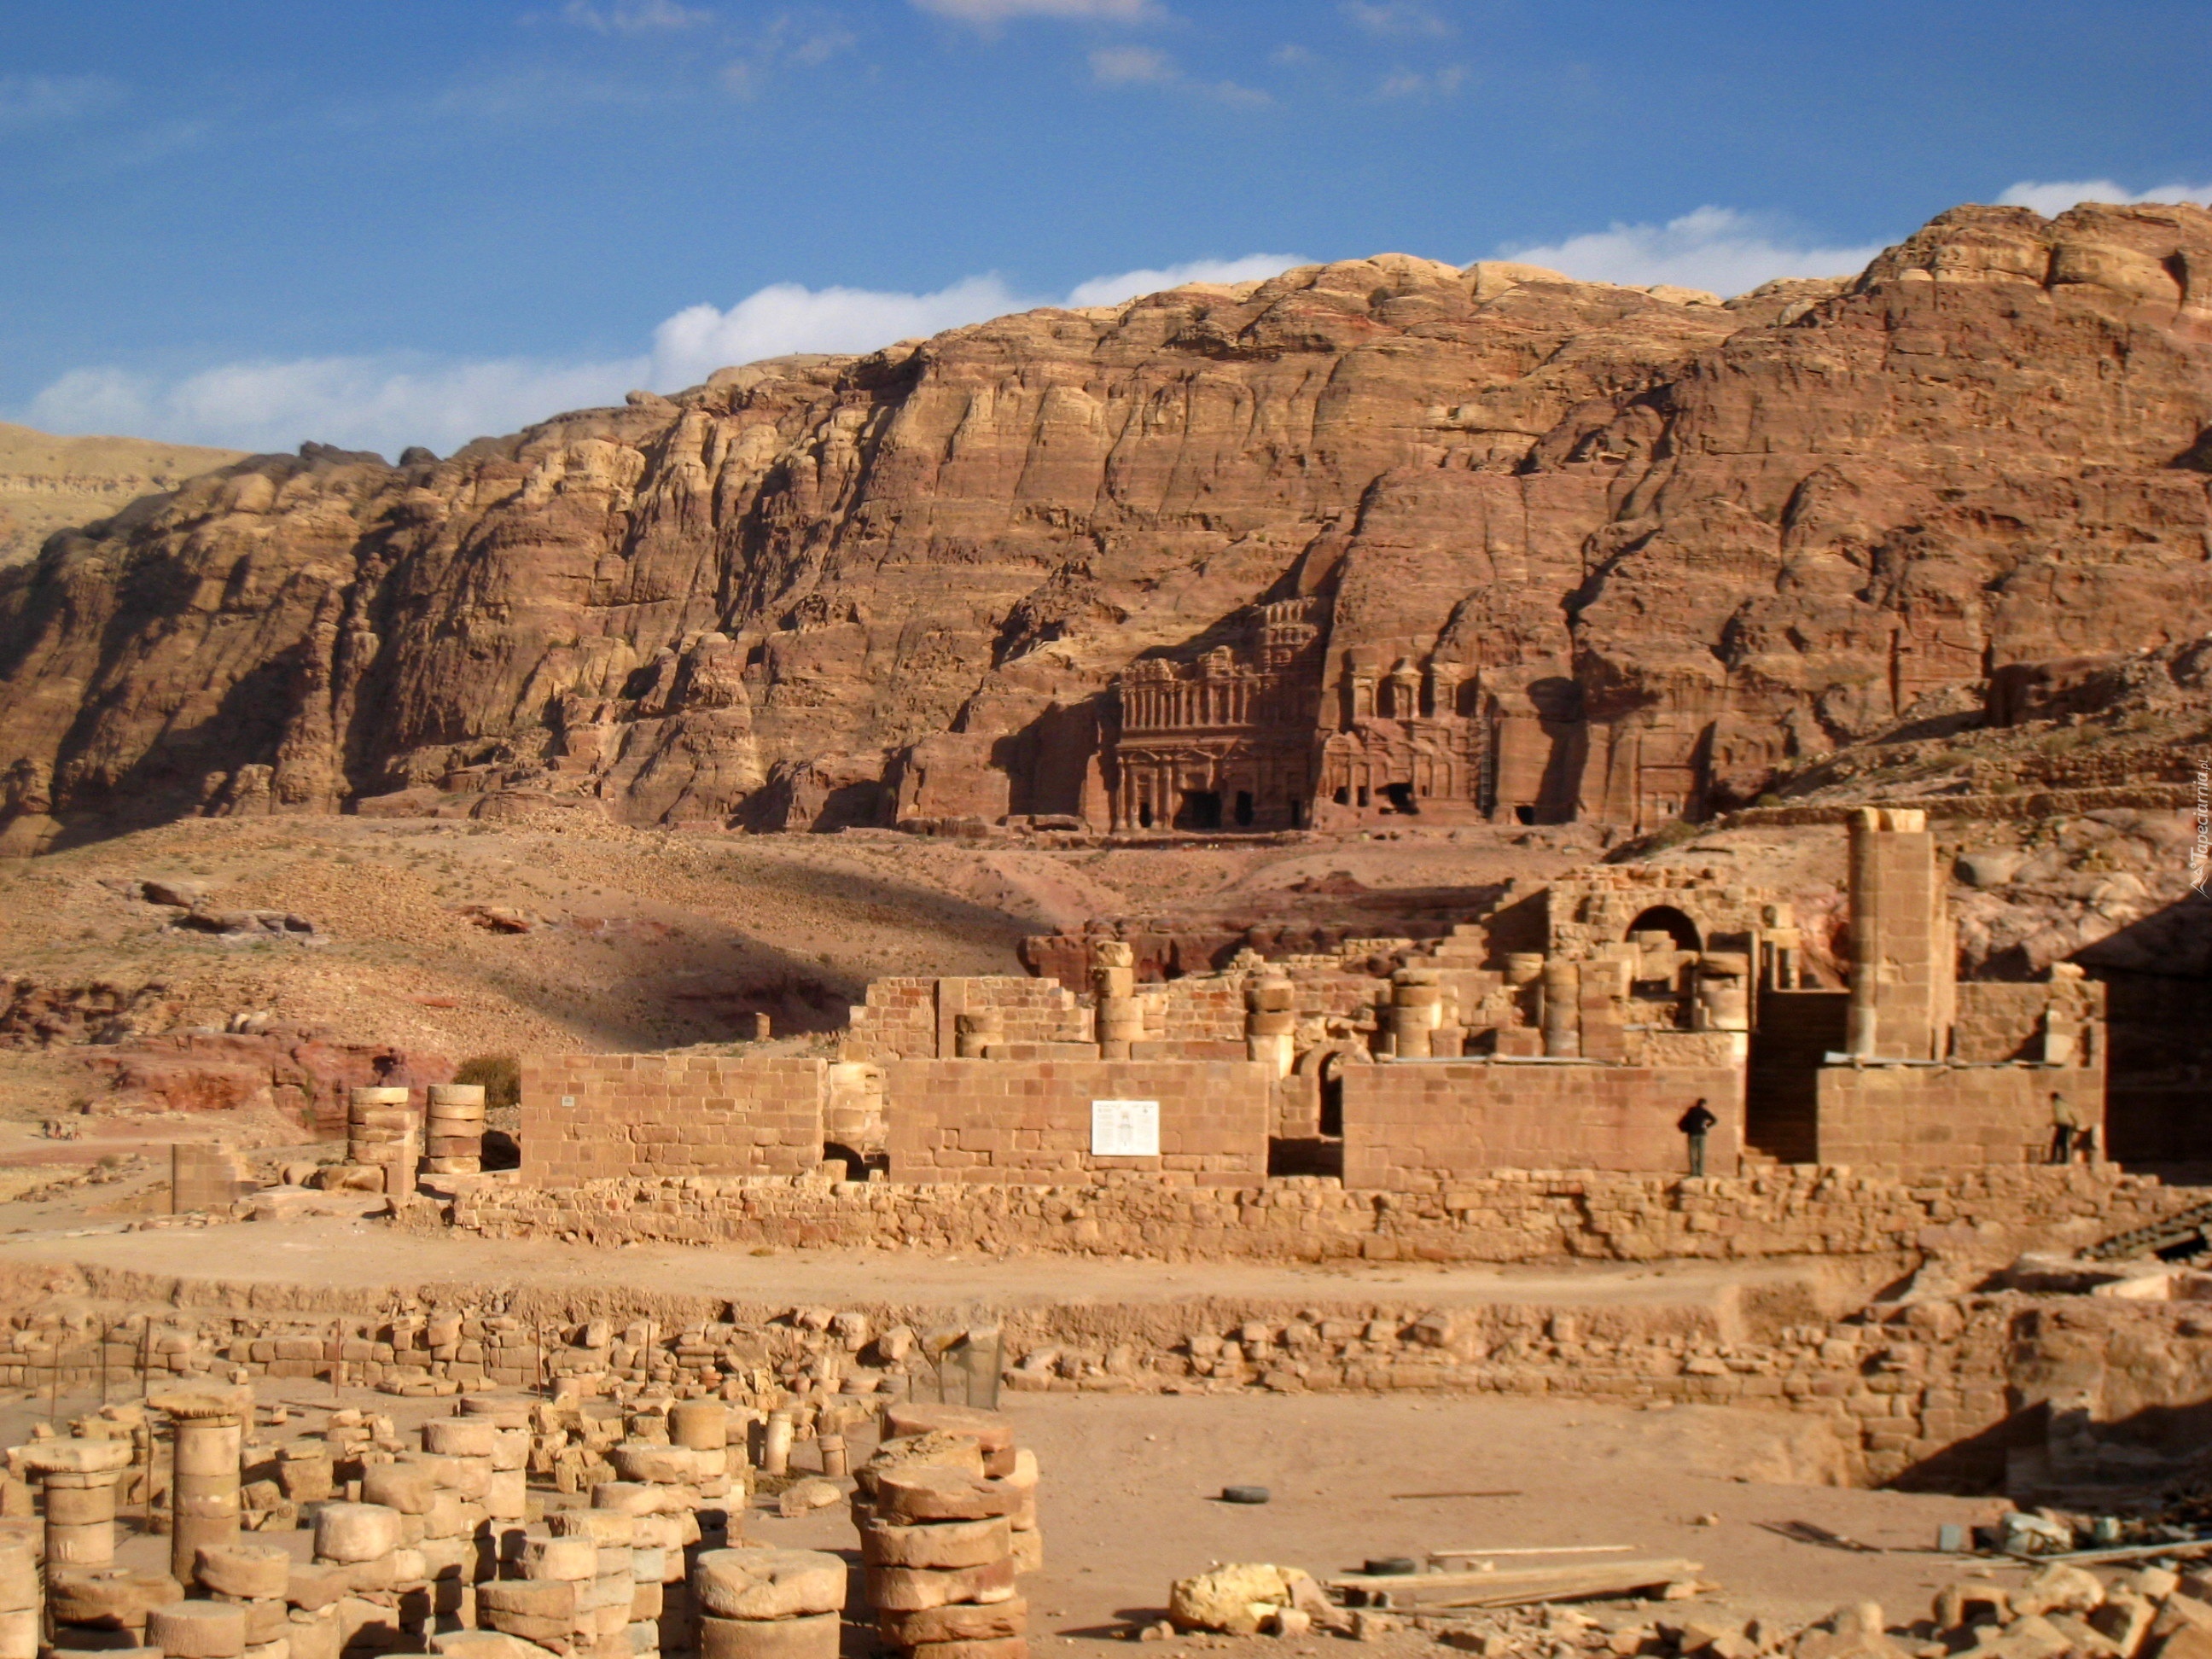 Grobowce królewskie, Ruiny, Petra, Jordania